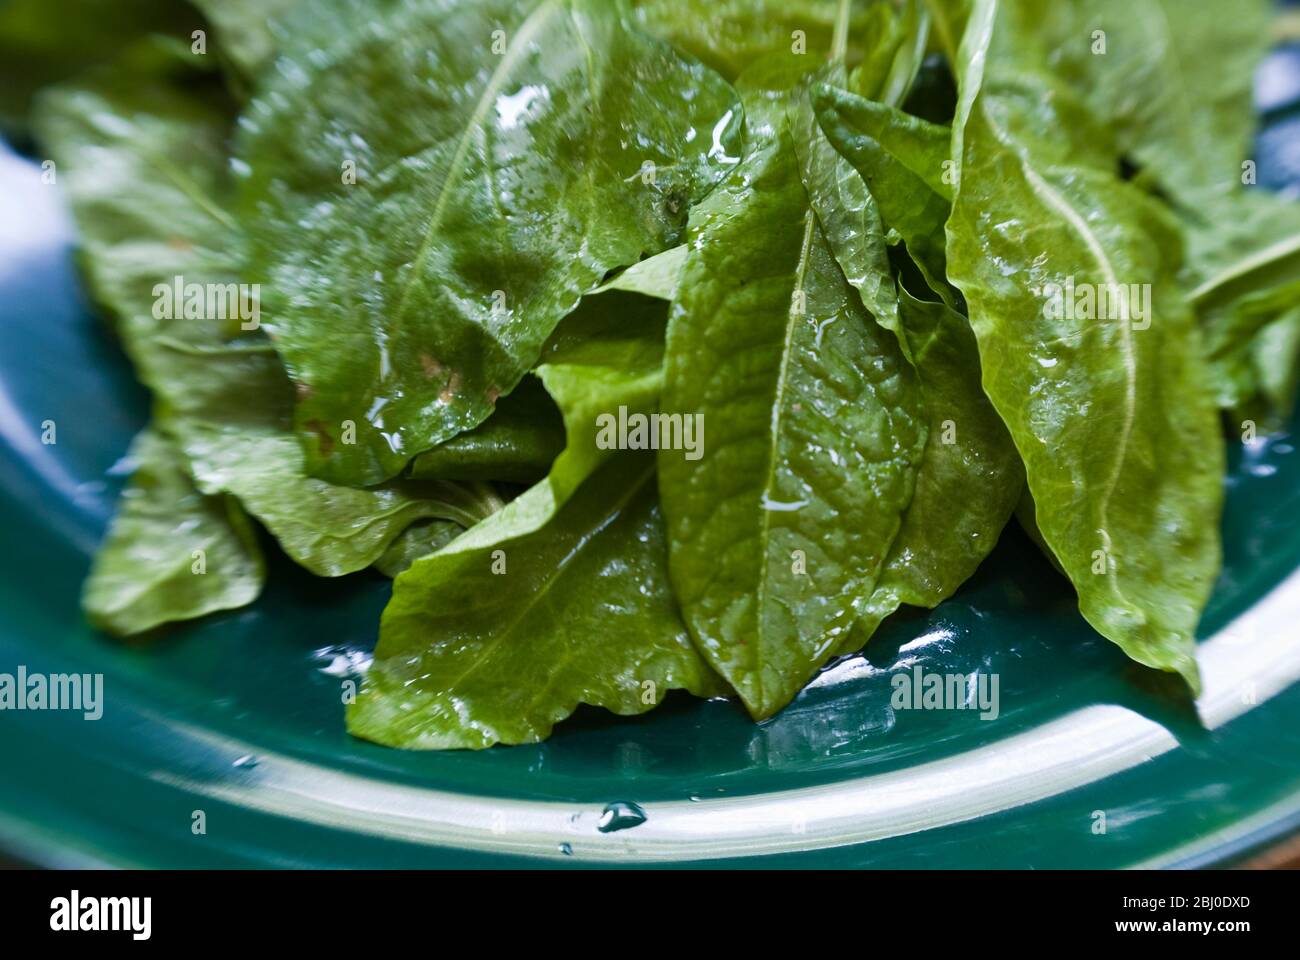 Frisch gepflückte und gewaschene Spinatblätter auf grünem Teller - Stockfoto